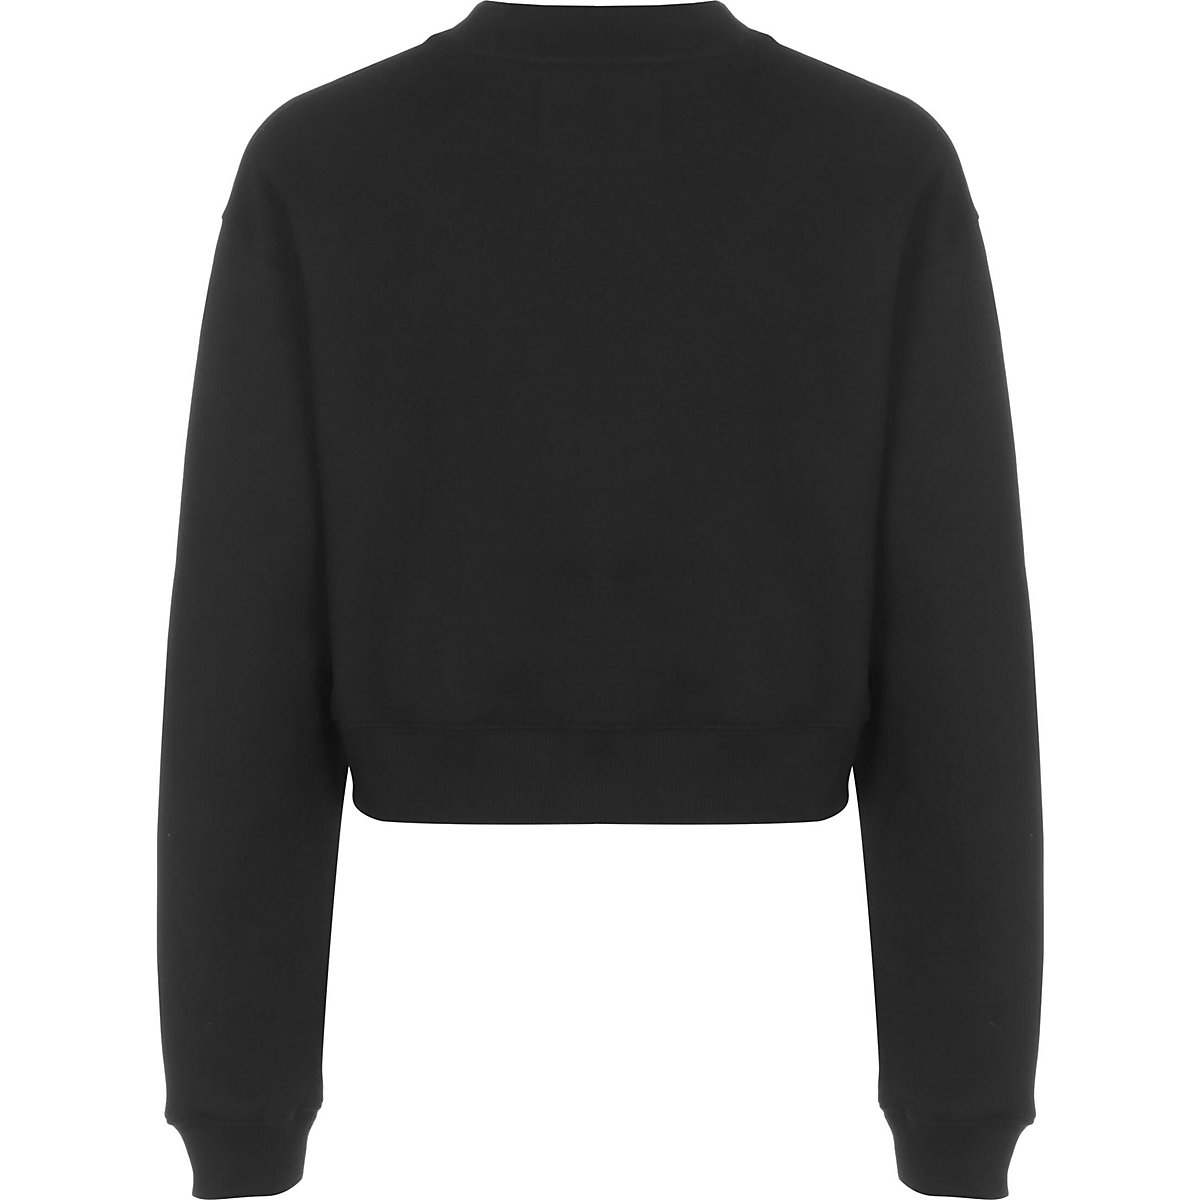 CALVIN KLEIN JEANS Calvin Klein Jeans Sweater Monogram Cropped Sweatshirts schwarz MV10400